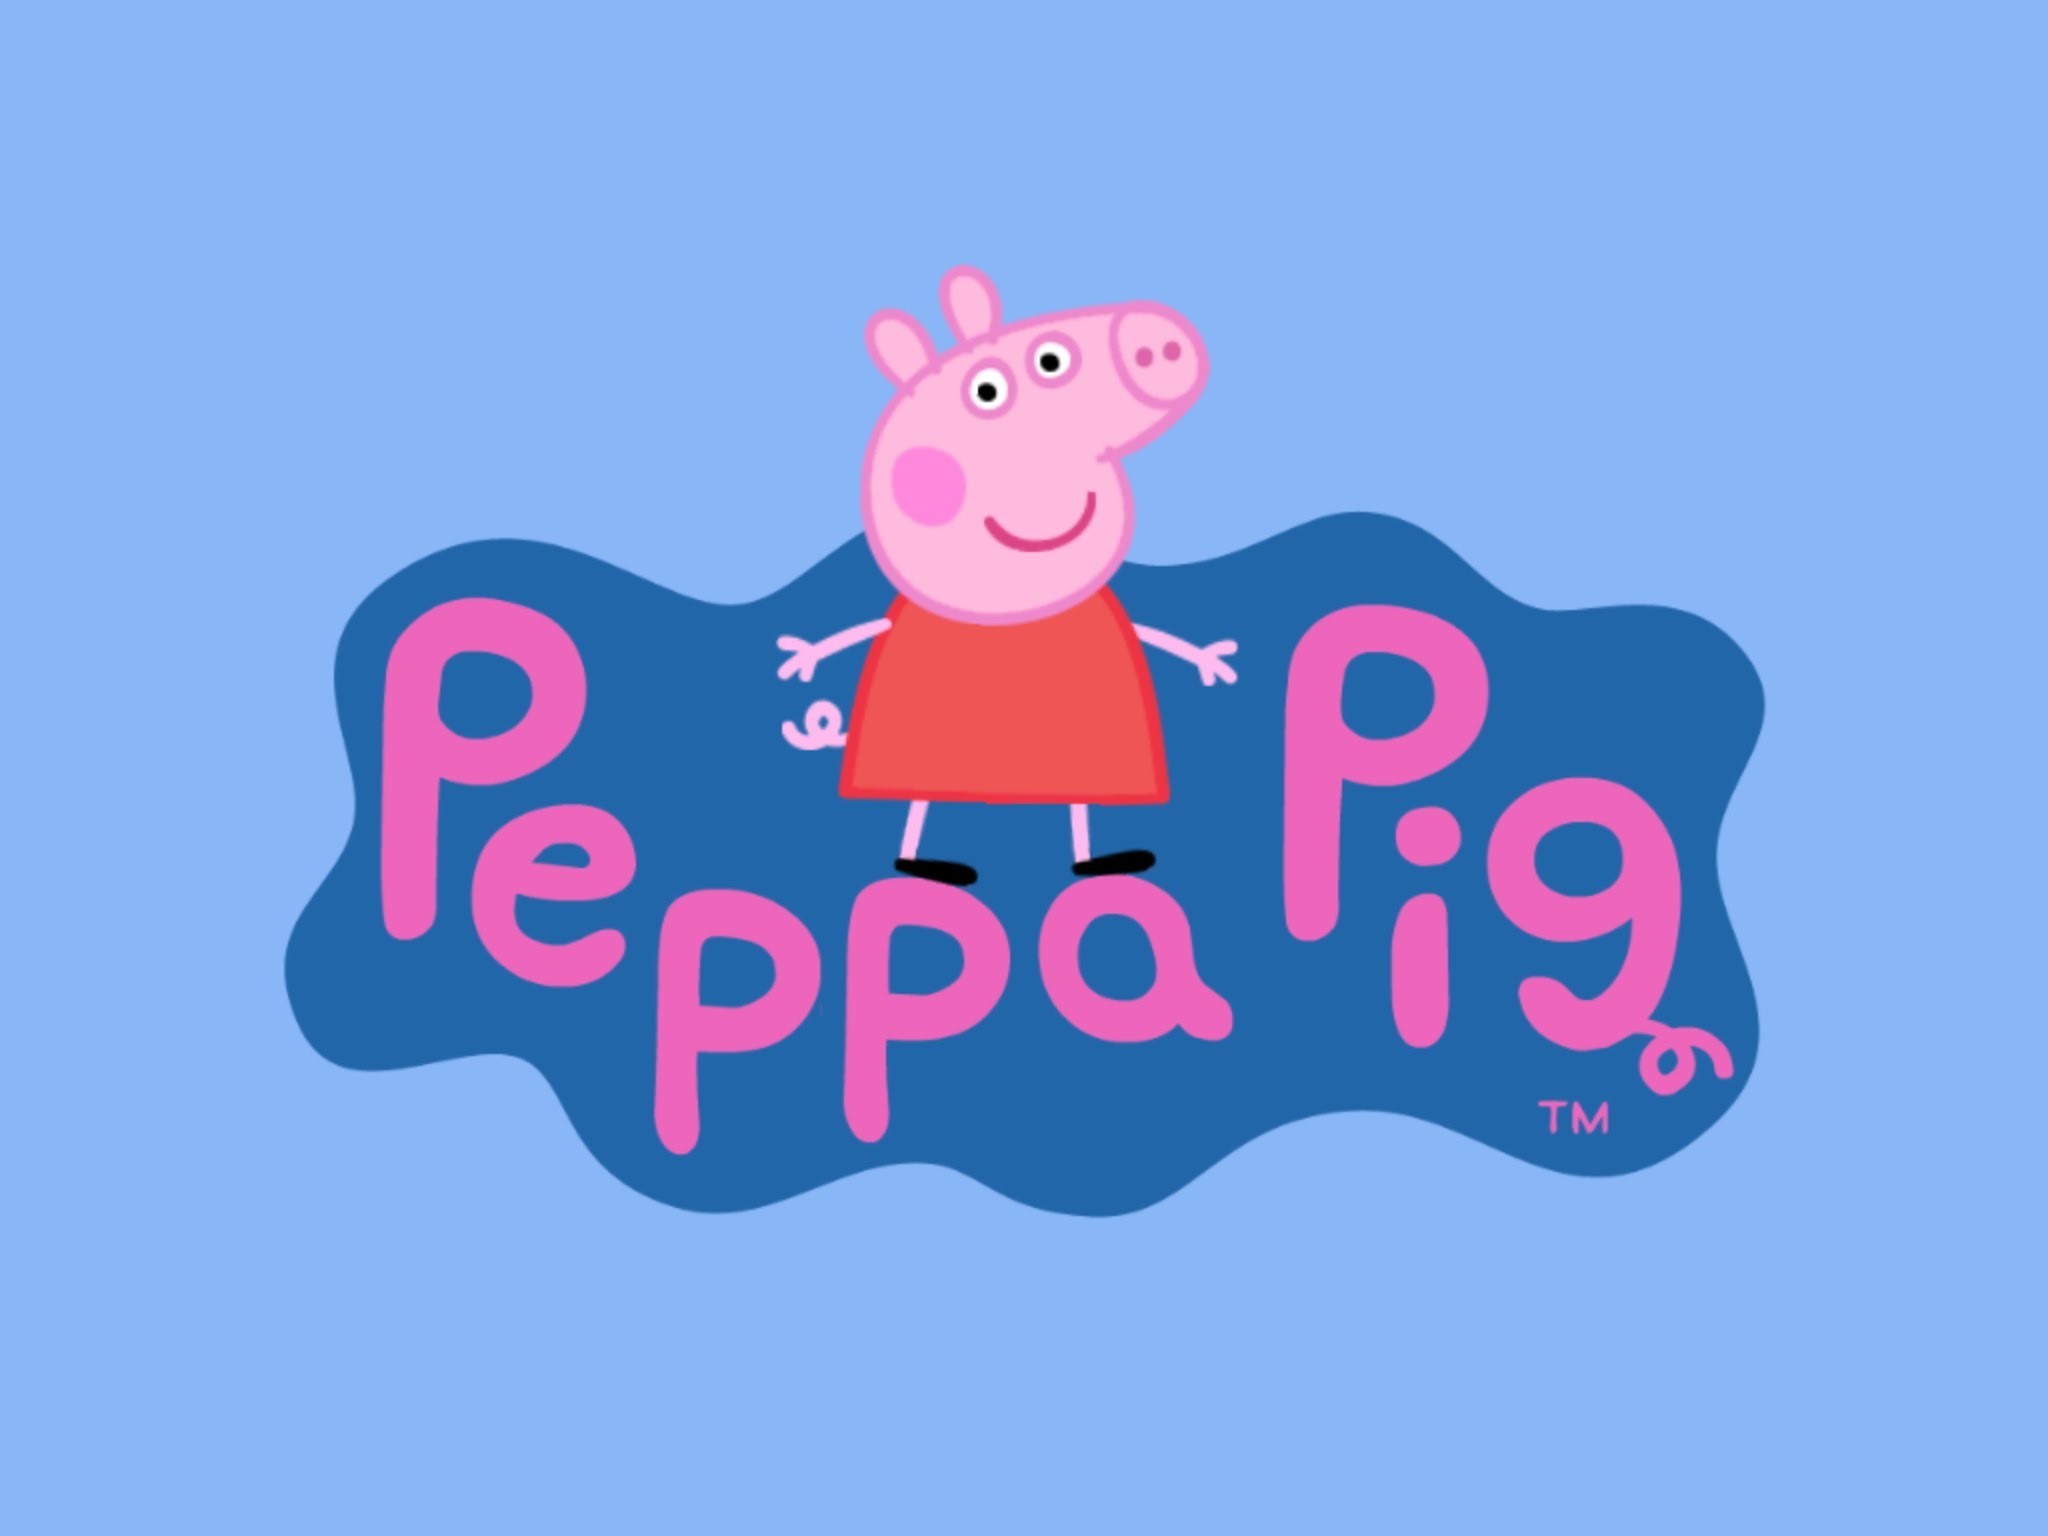 peppa pig fondos de pantalla hd,rosado,texto,dibujos animados,fuente,ilustración